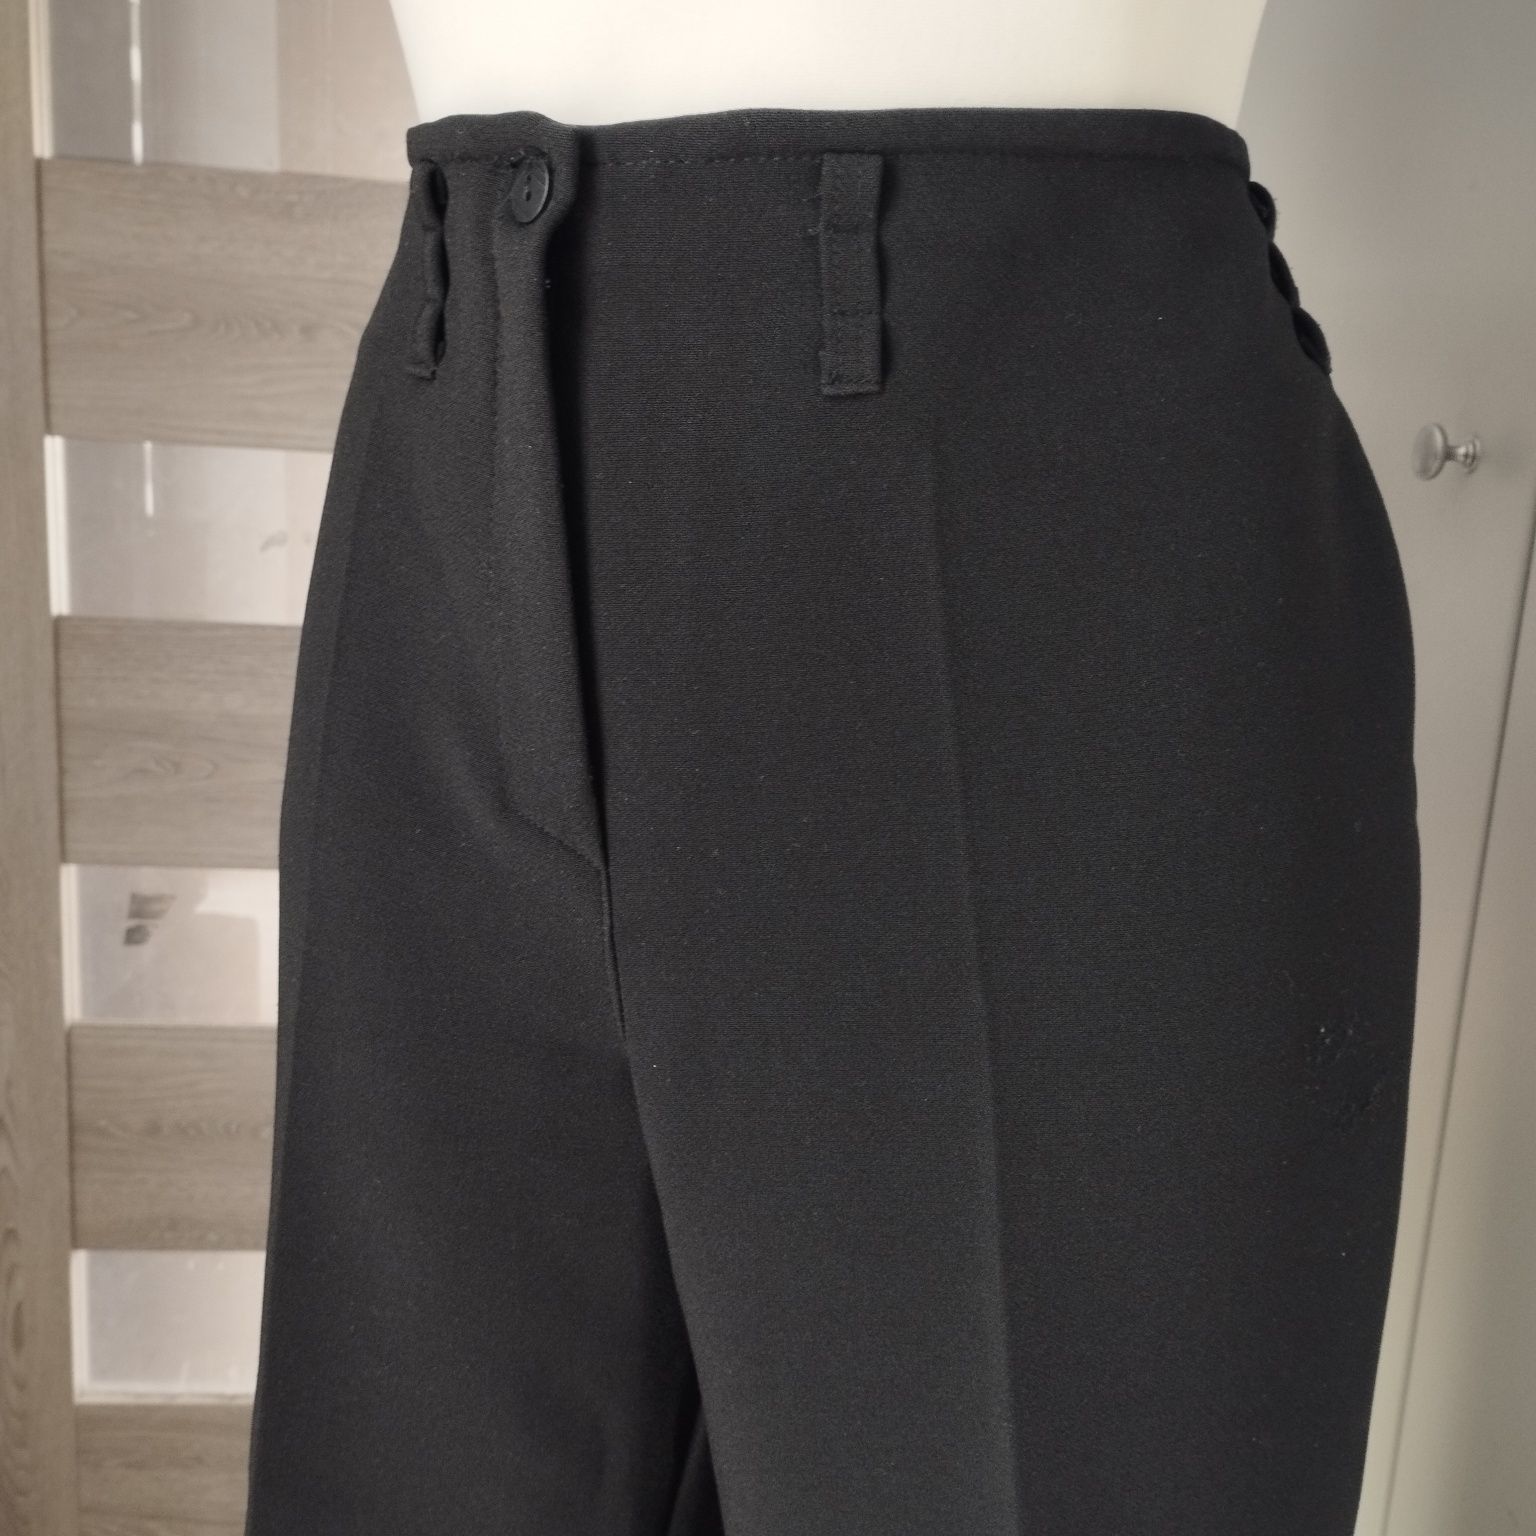 Eleganckie spodnie damskie czarne szeroka nogawka kami collection rozm